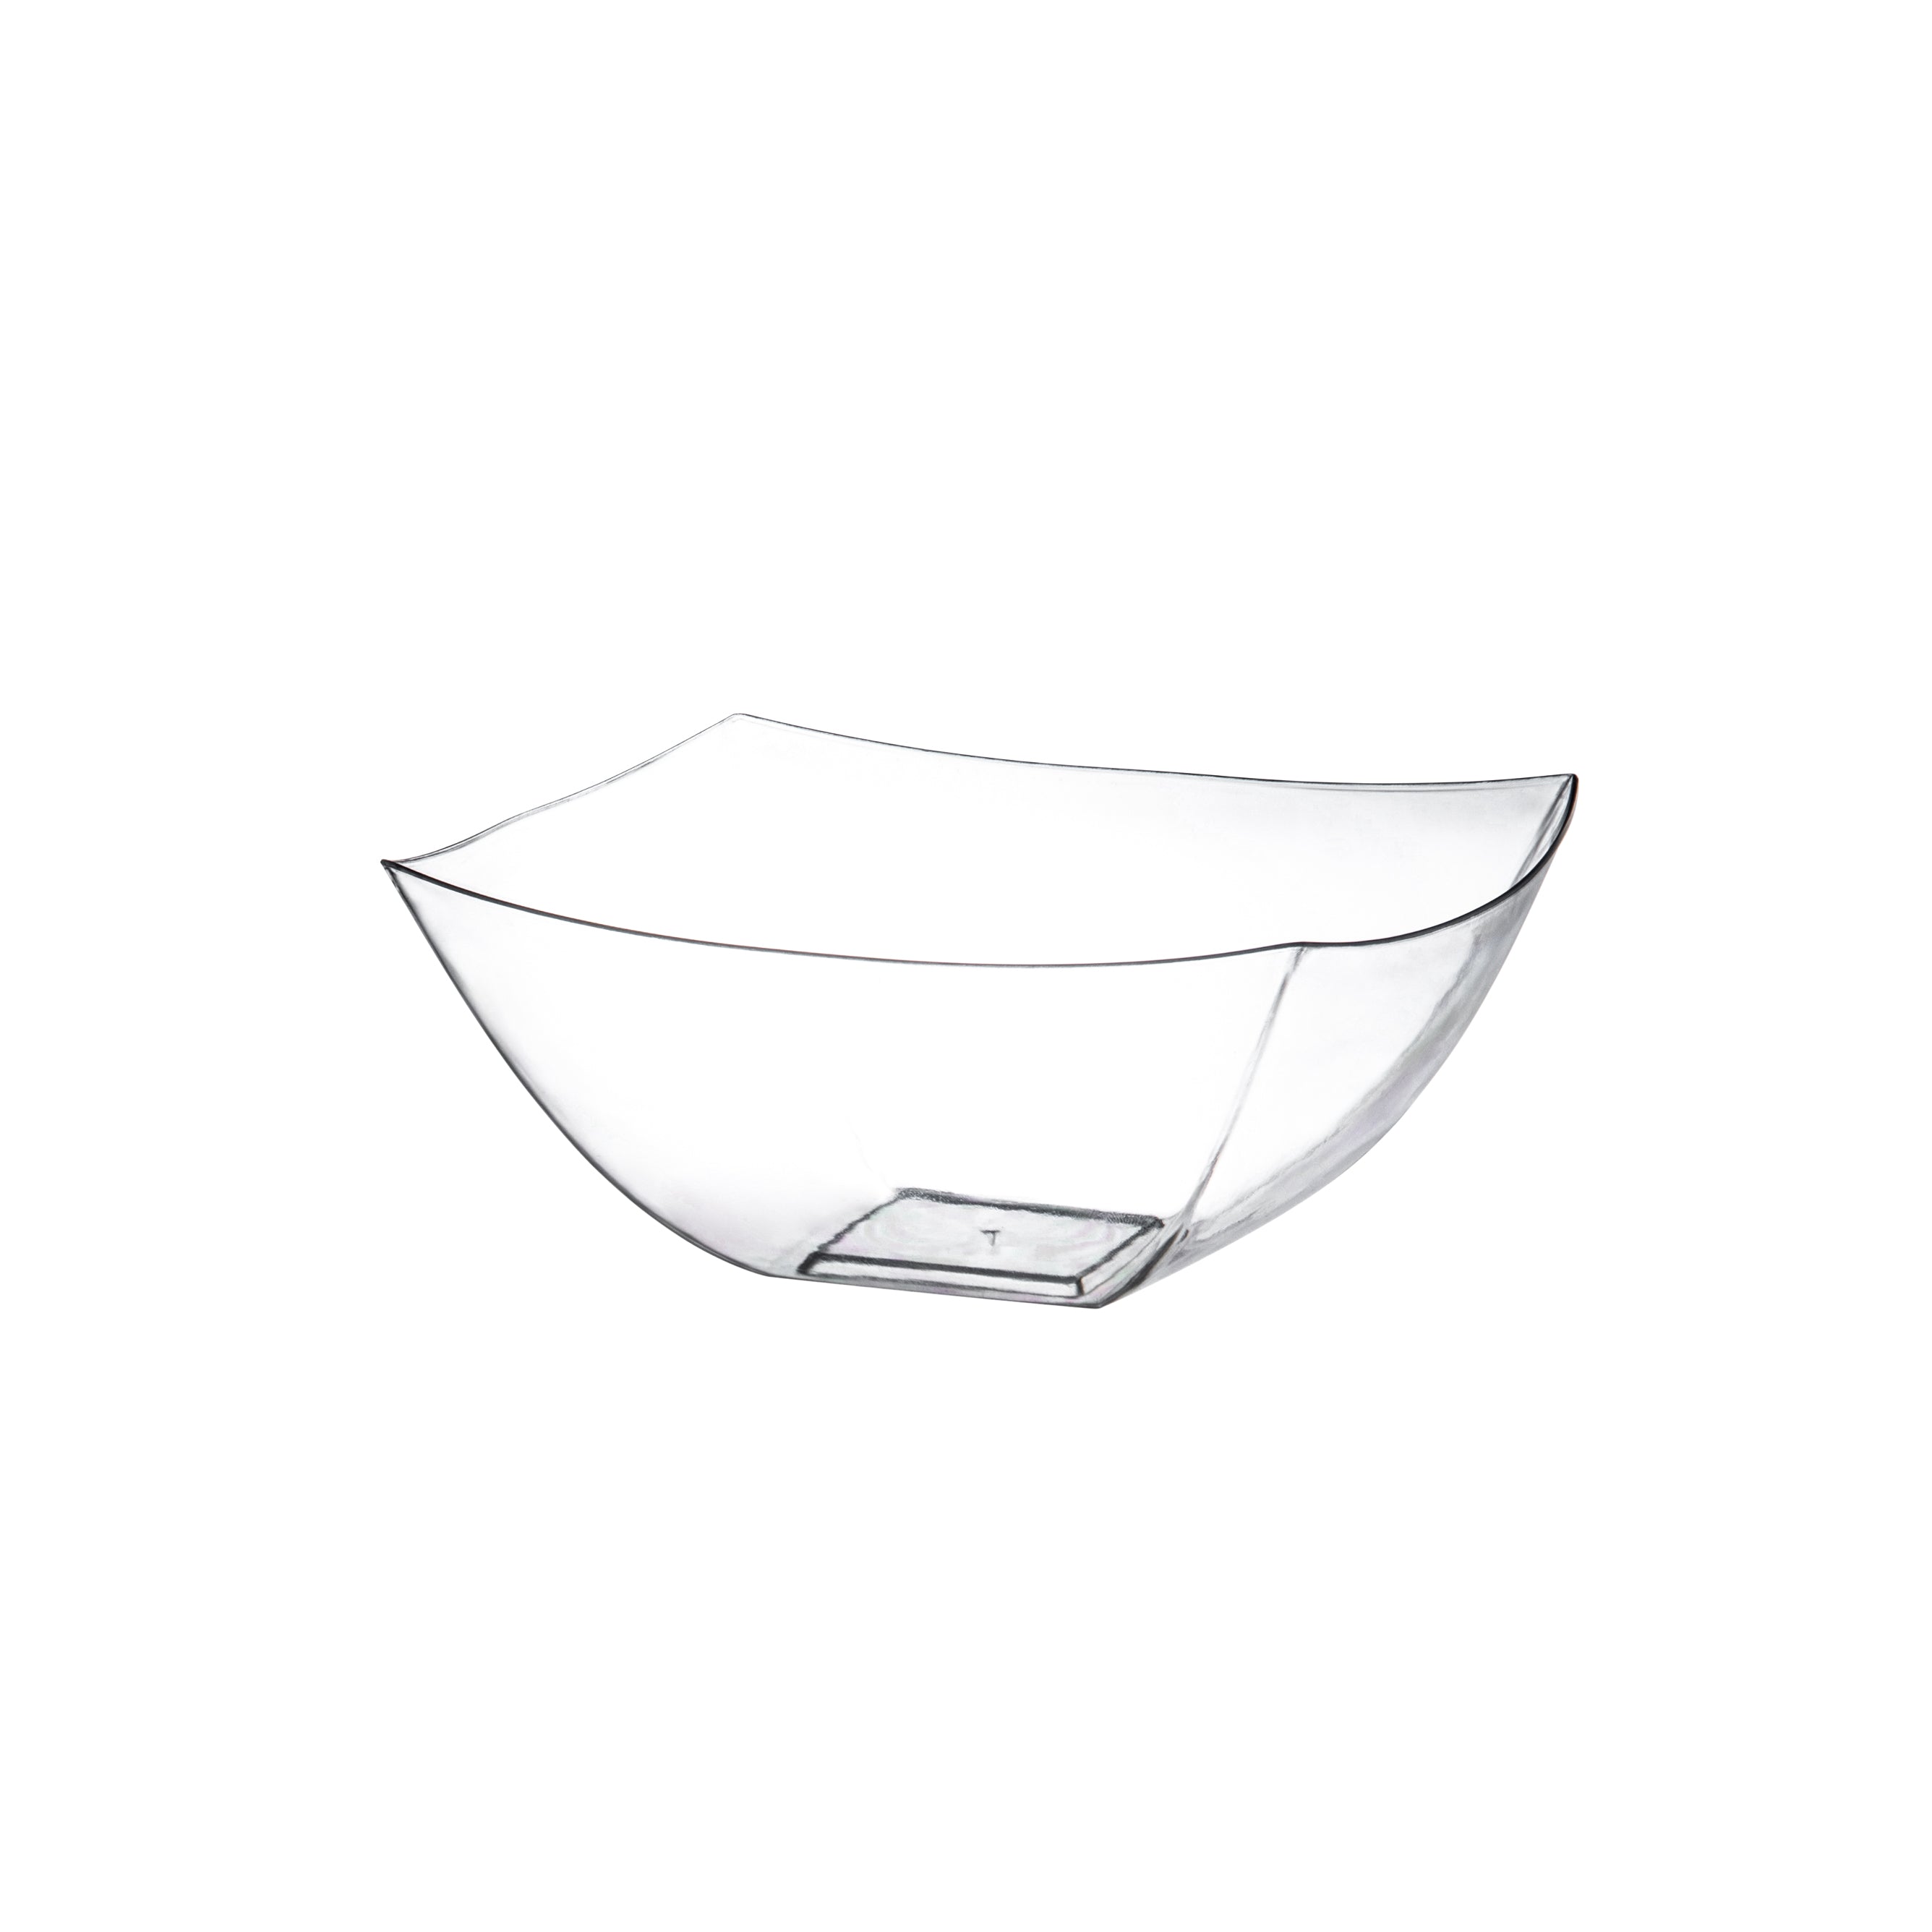 Plastic Bowls - Clear Square Serving Bowls